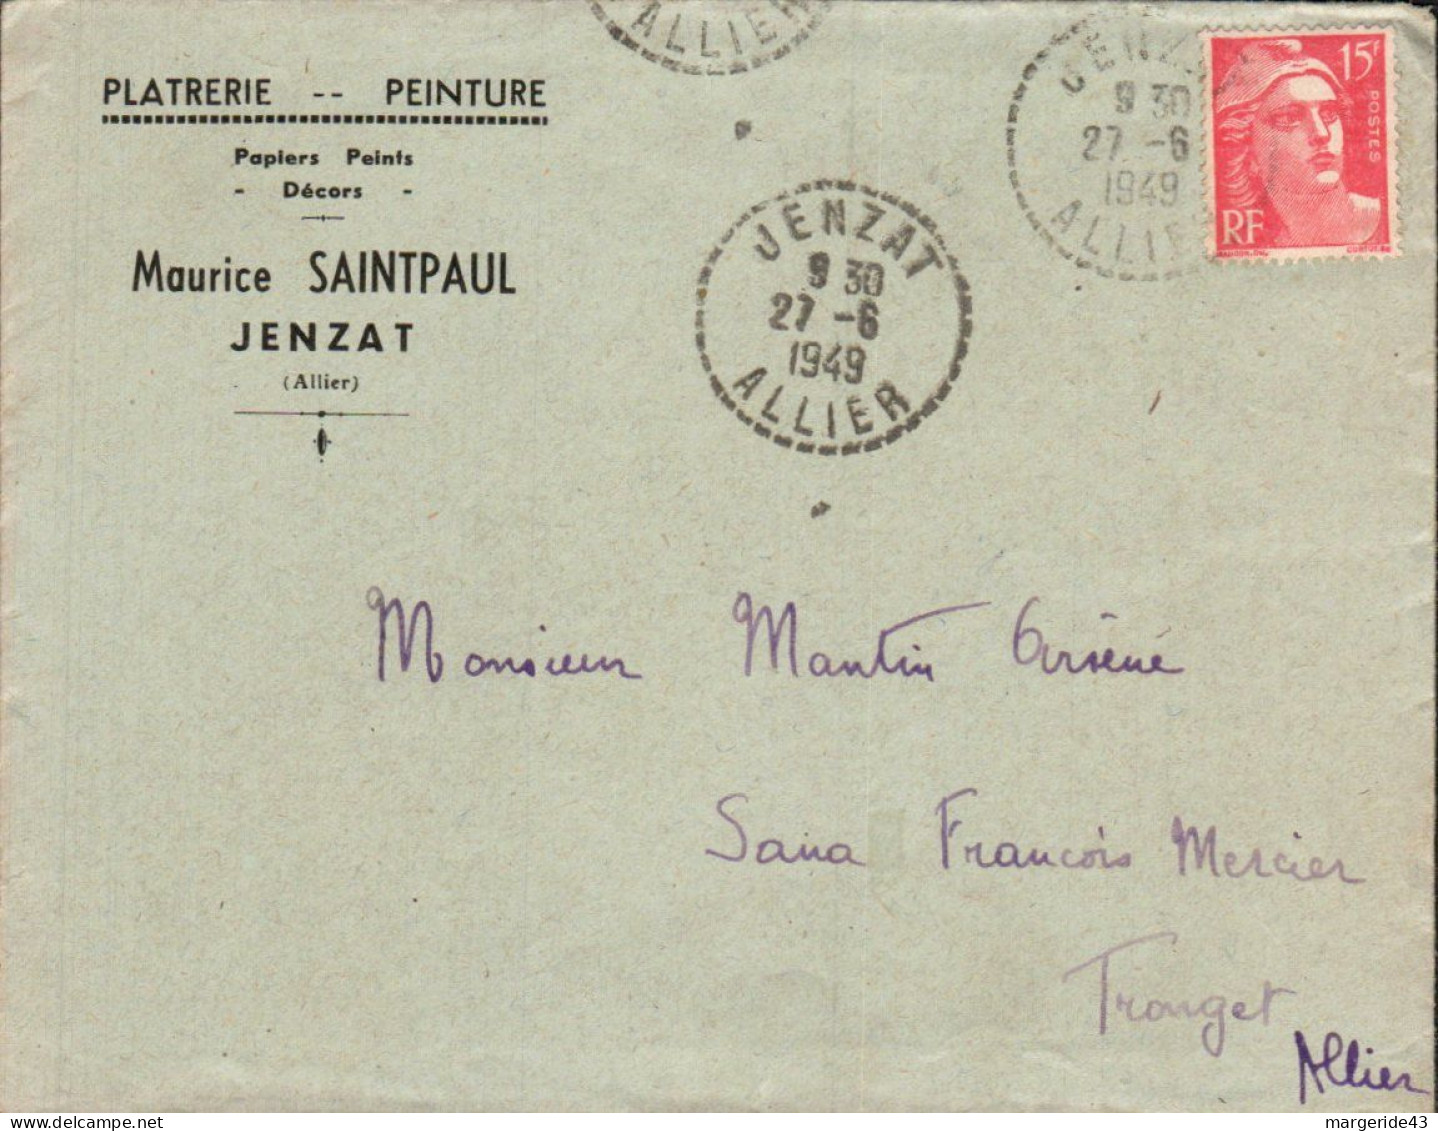 GANDON SUR LETTRE A EN TETE DE JENZAT 1949 - Posttarieven